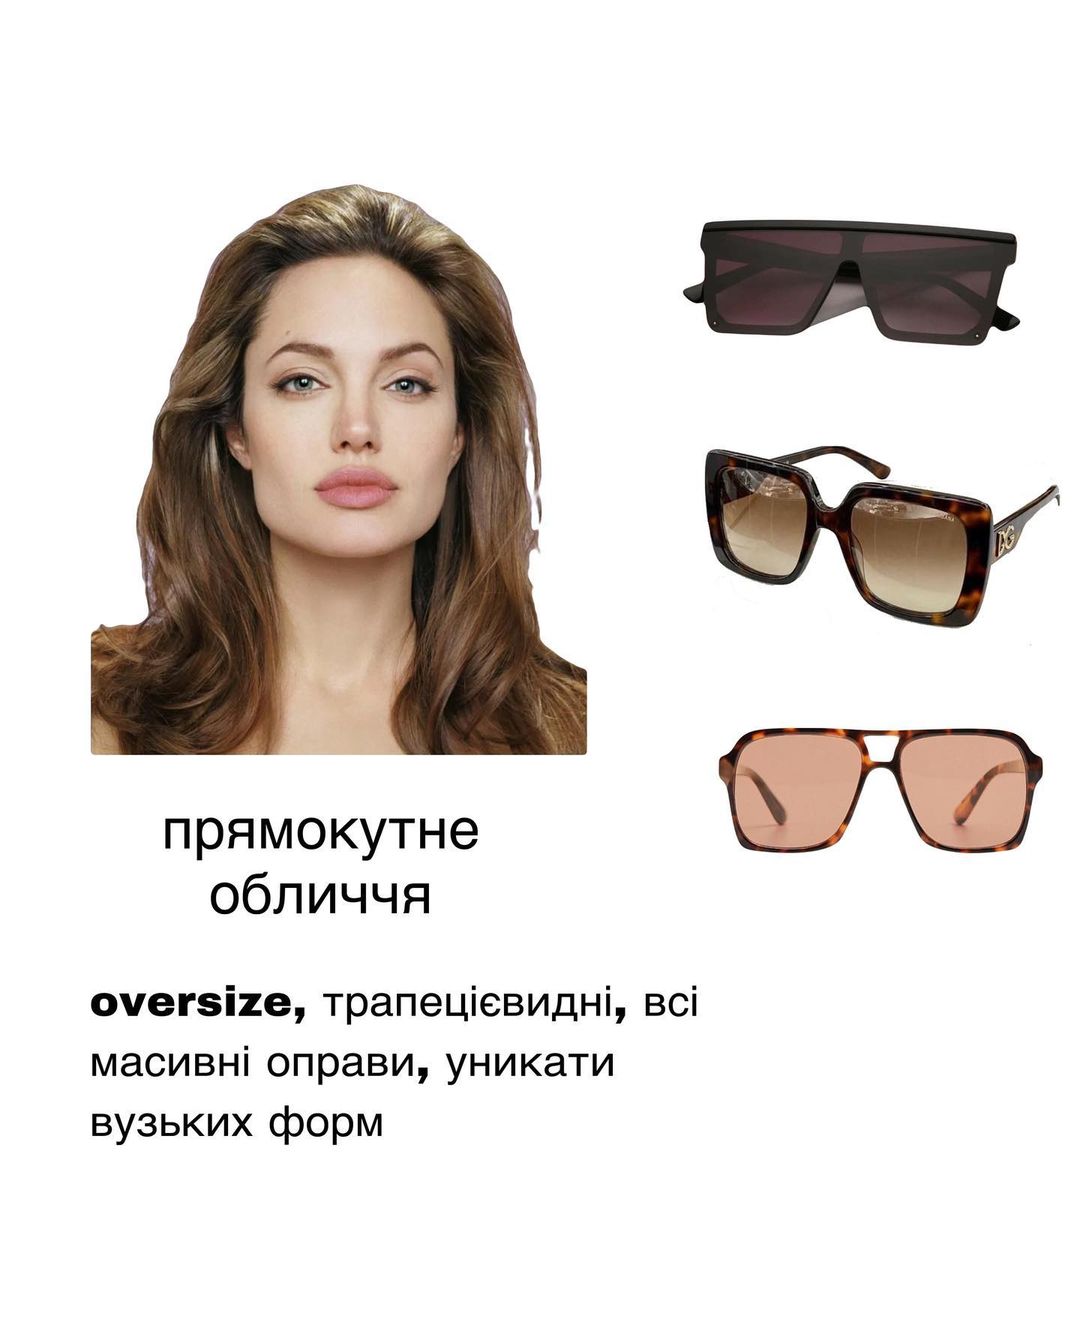 Будуть ідеально підходити: як вибрати сонцезахисні окуляри за формою обличчя